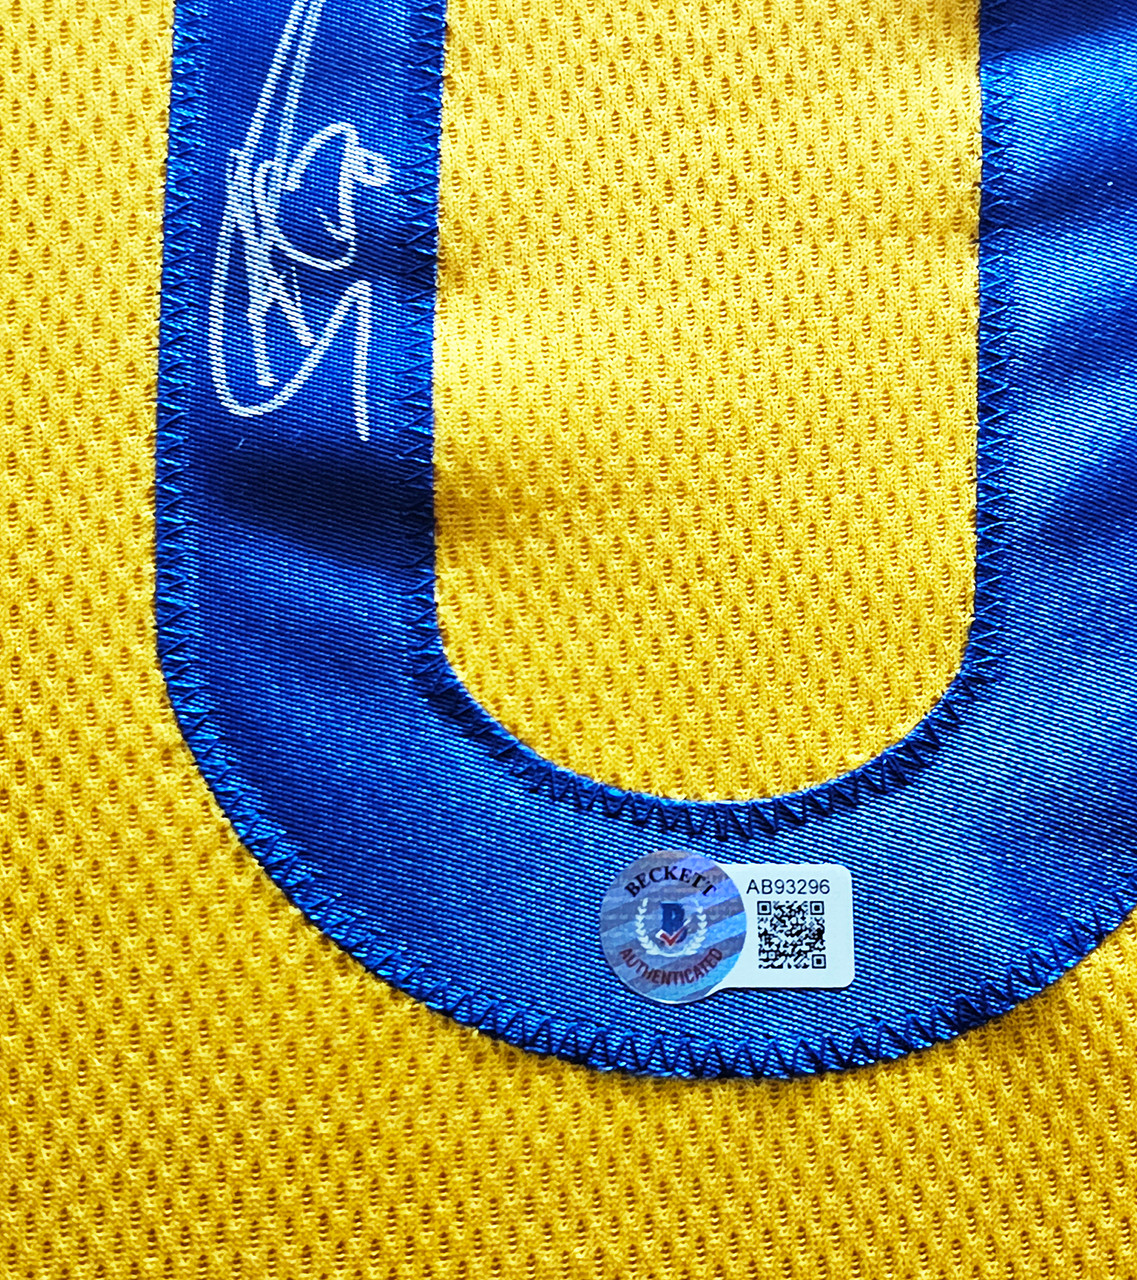 Golden State Warriors Stephen Curry Autographed Blue Jordan Statement  Edition Jersey Size 48 Beckett BAS QR Stock #216024 - Mill Creek Sports